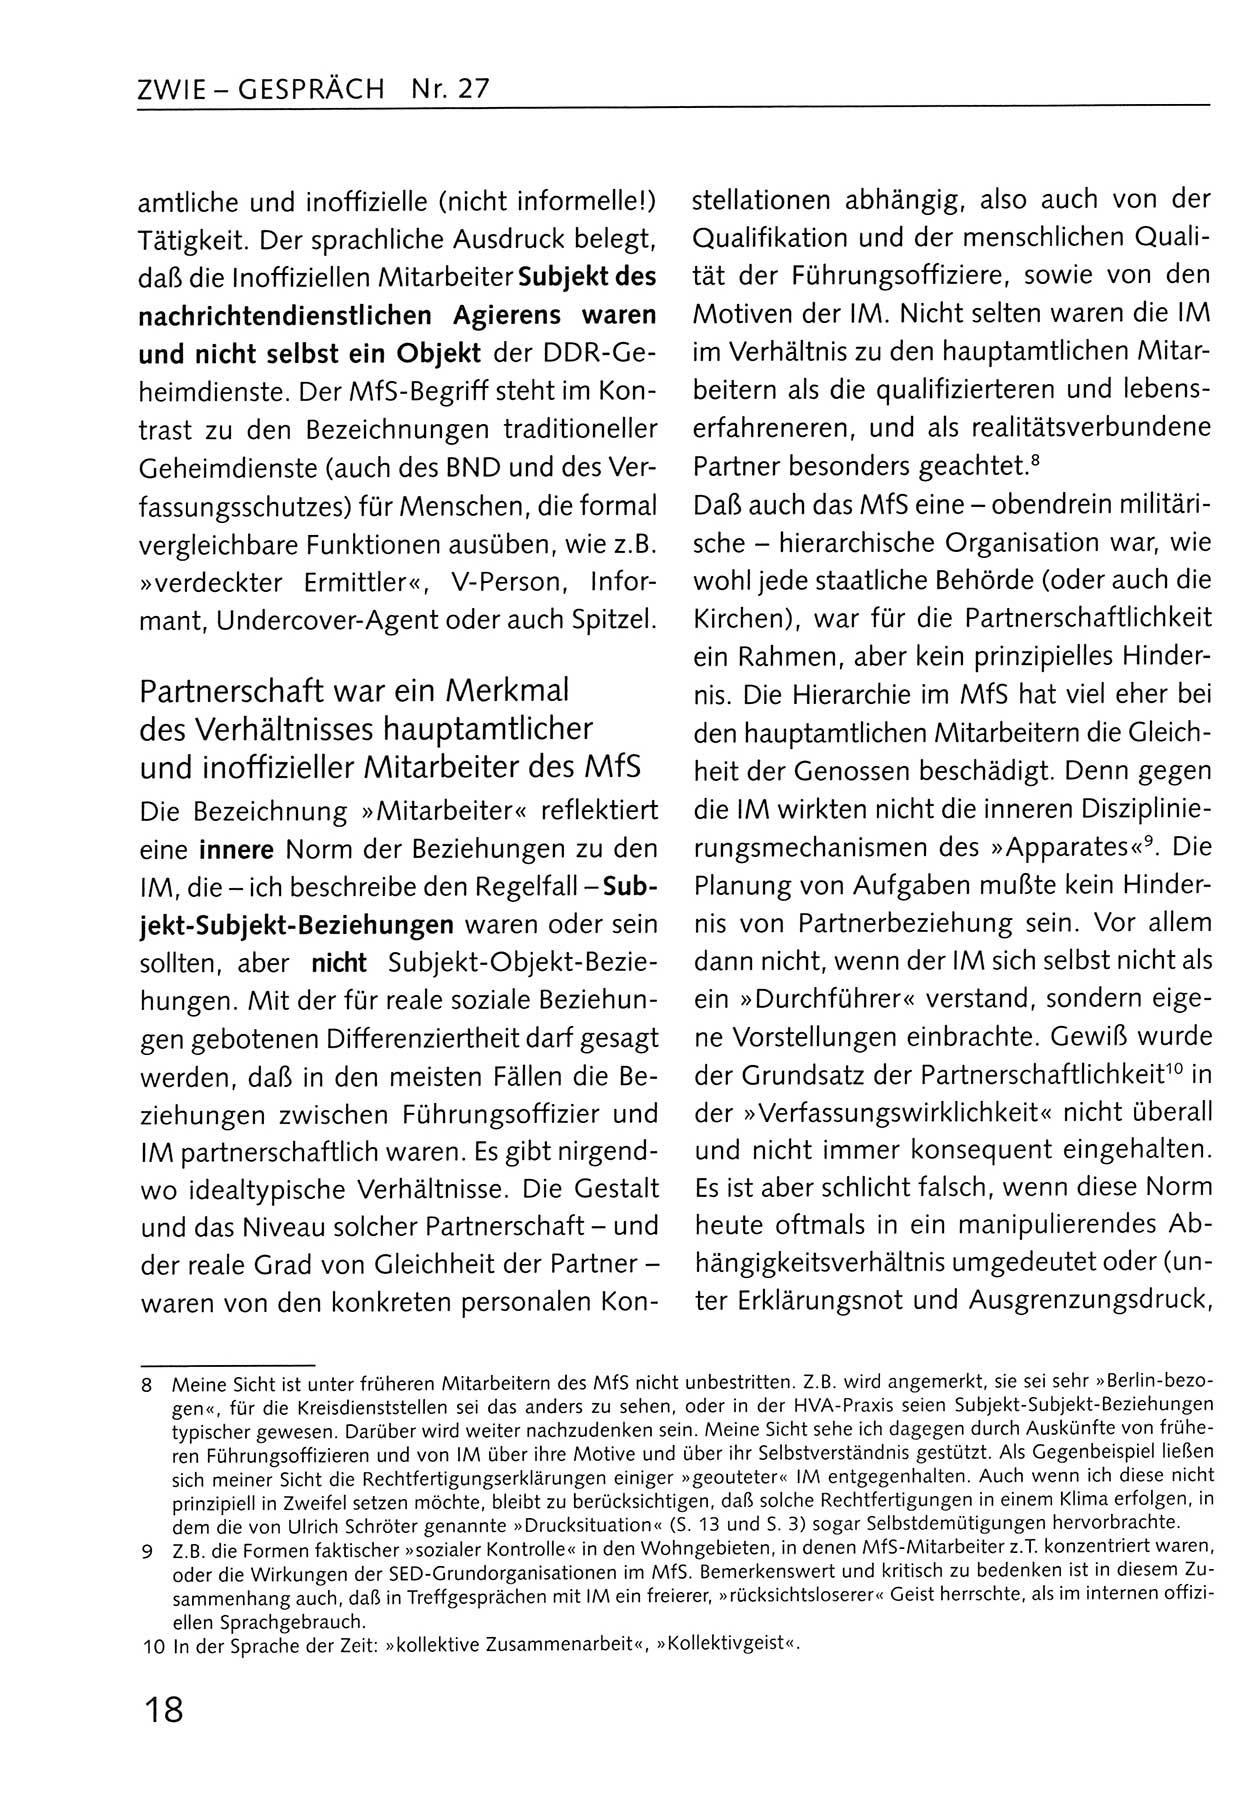 Zwie-Gespräch, Beiträge zum Umgang mit der Staatssicherheits-Vergangenheit [Deutsche Demokratische Republik (DDR)], Ausgabe Nr. 27, Berlin 1995, Seite 18 (Zwie-Gespr. Ausg. 27 1995, S. 18)